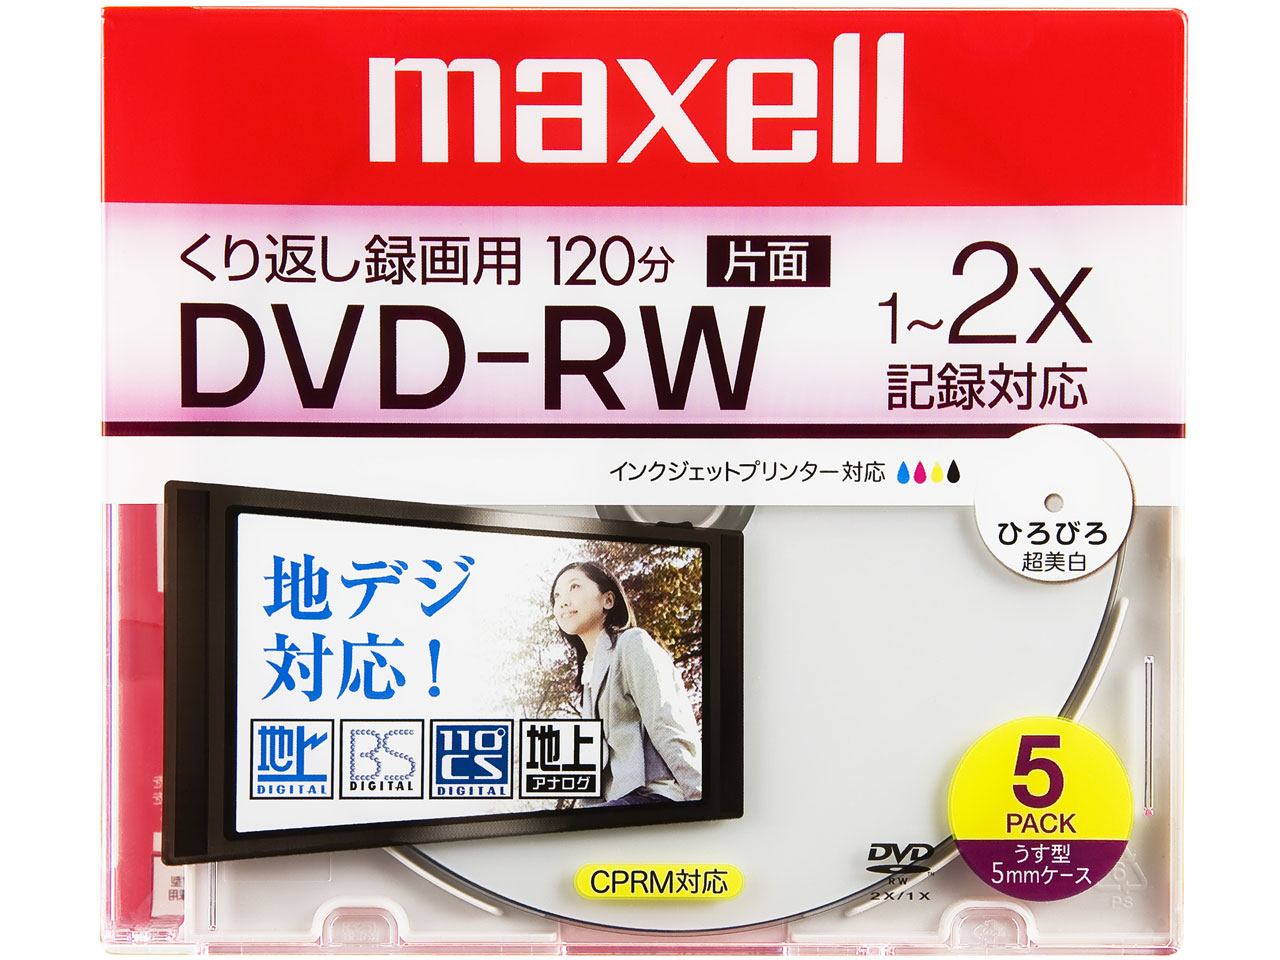 価格 Com Dw1wp 5s Dvd Rw 2倍速 5枚組 の製品画像